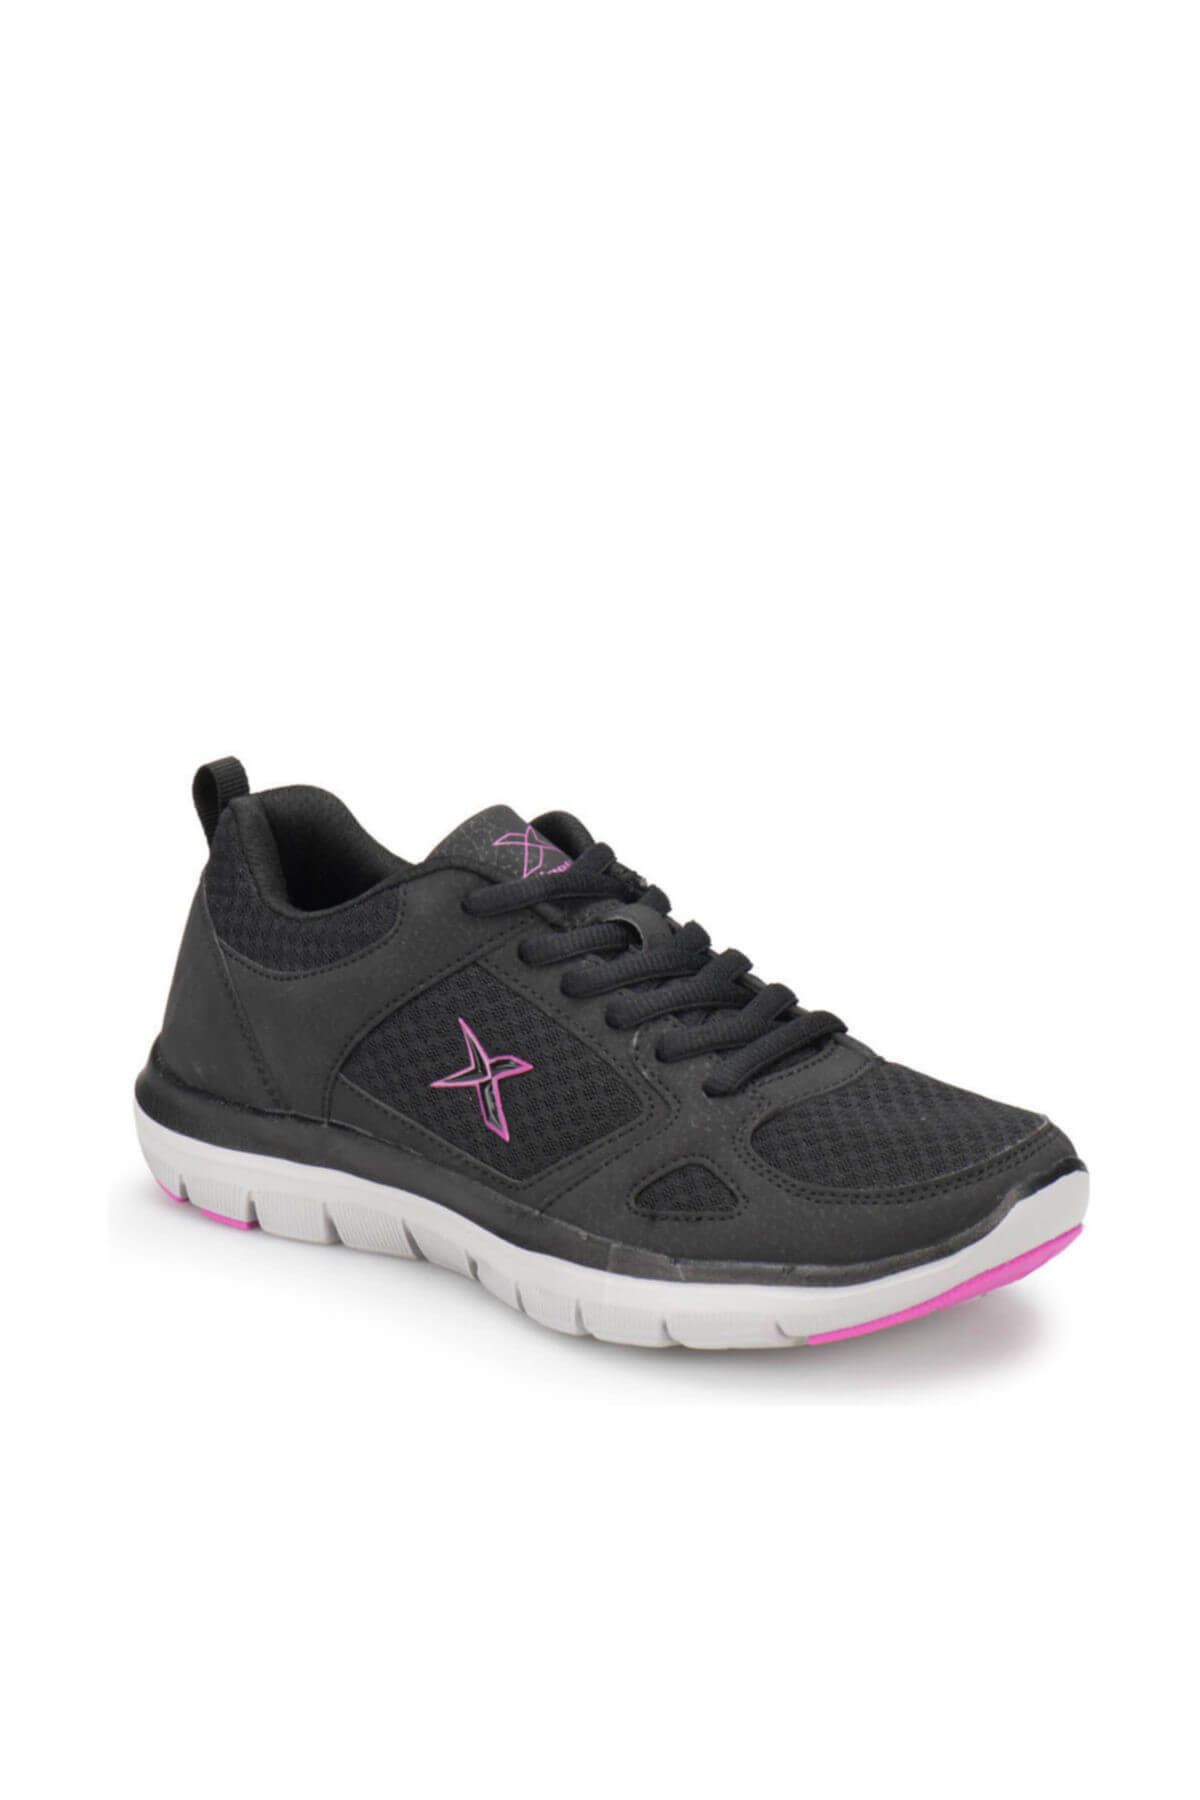 Kinetix FLEX COMFORT TX W Siyah Gri Pembe Kadın Yürüyüş Ayakkabısı 100287041